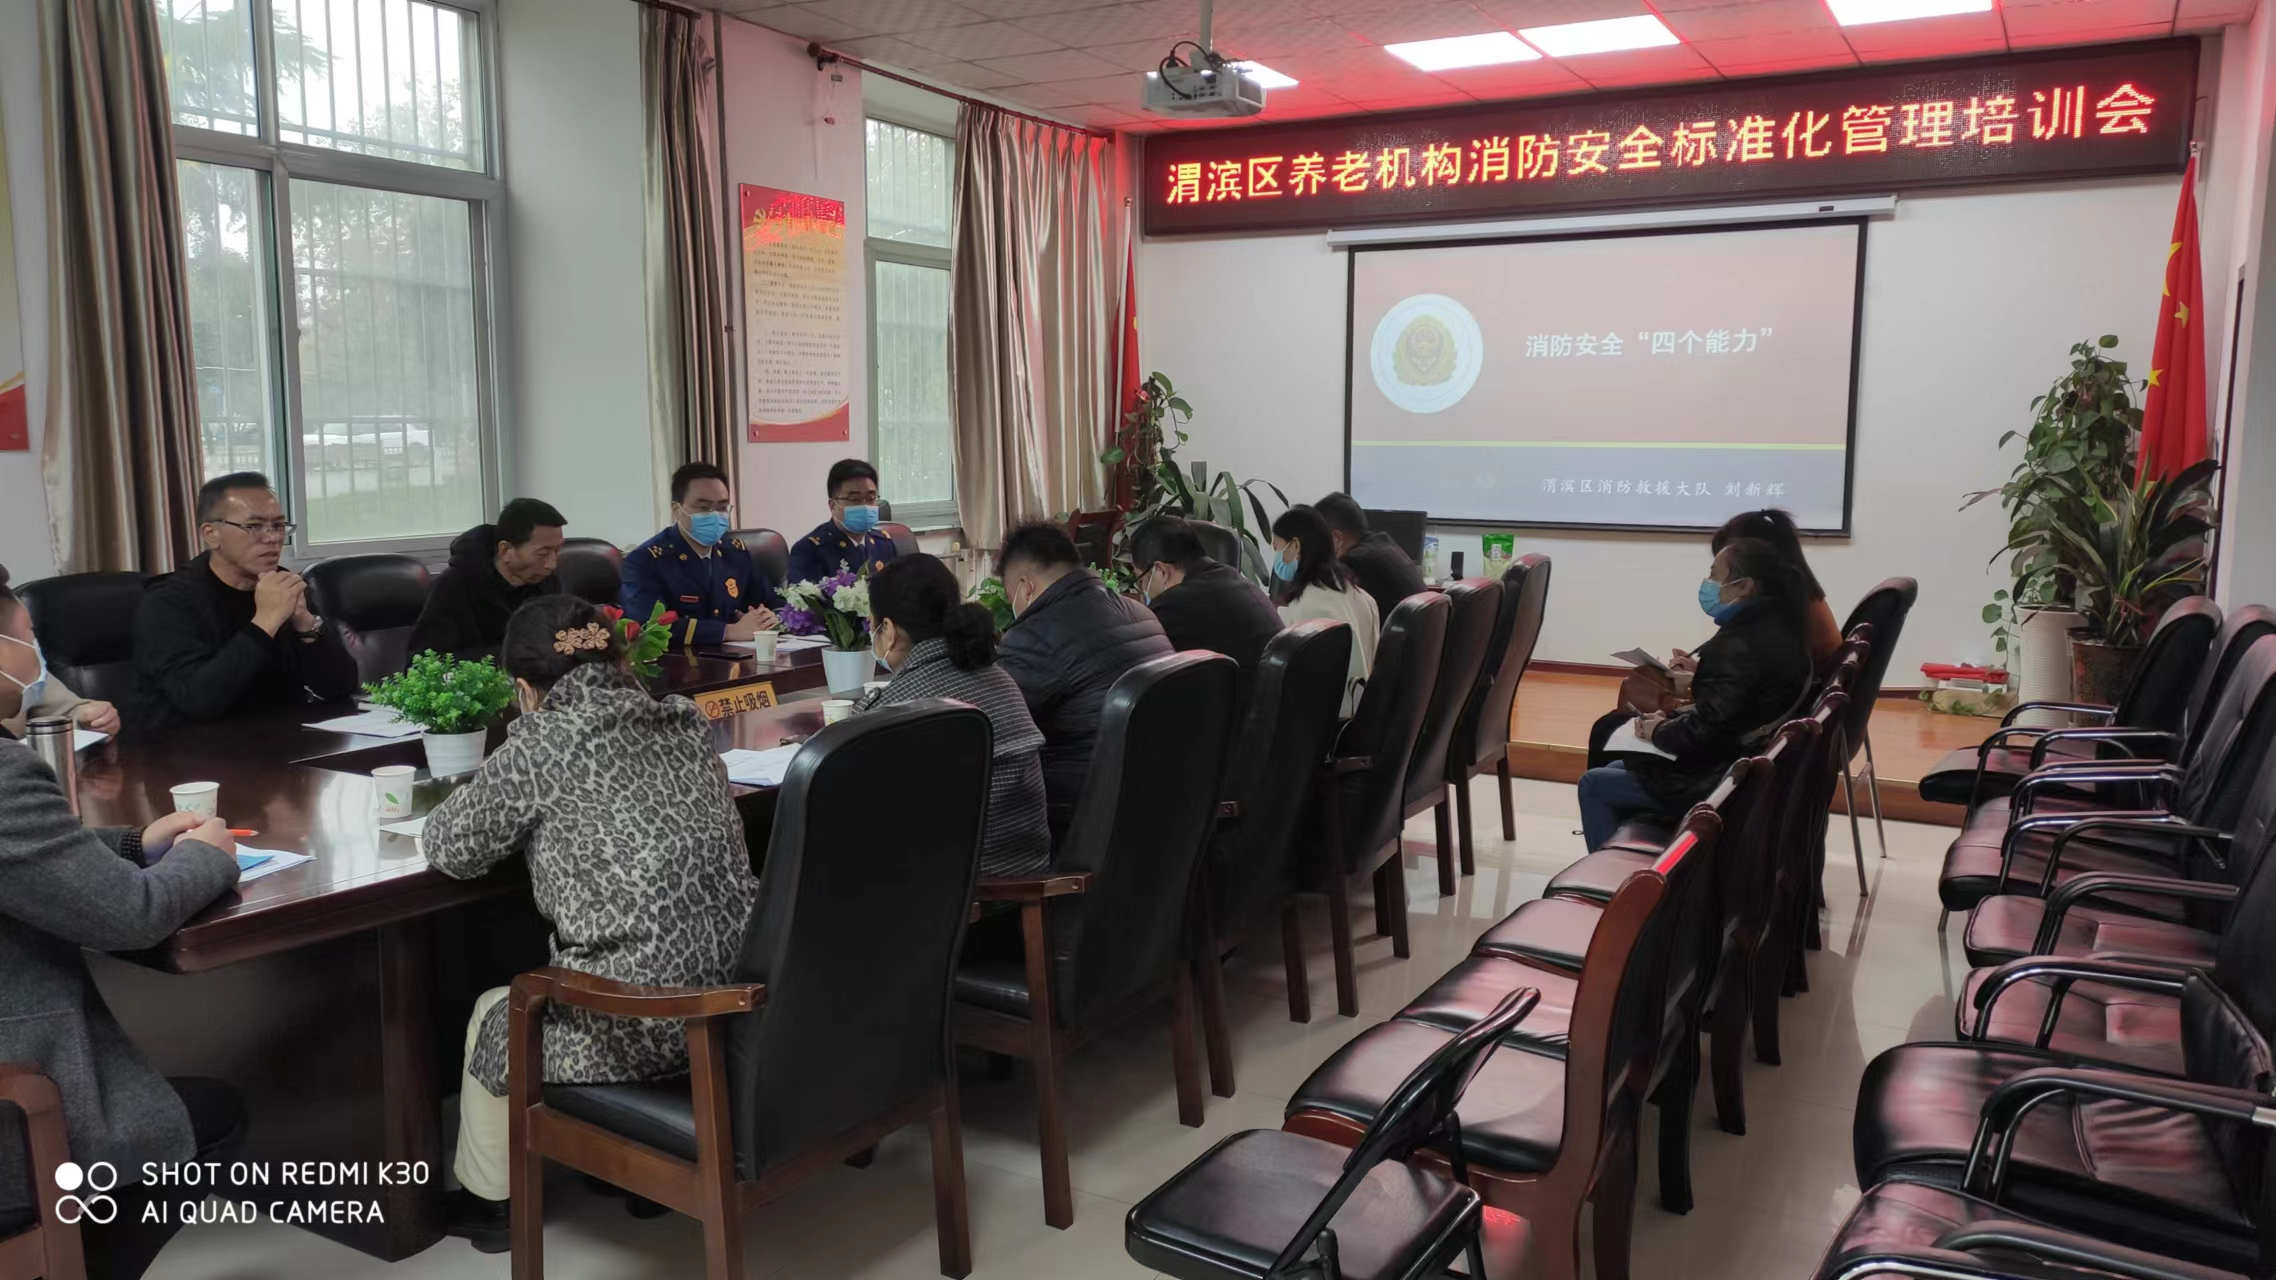 渭滨区召开养老机构消防安全标准化管理创建培训会